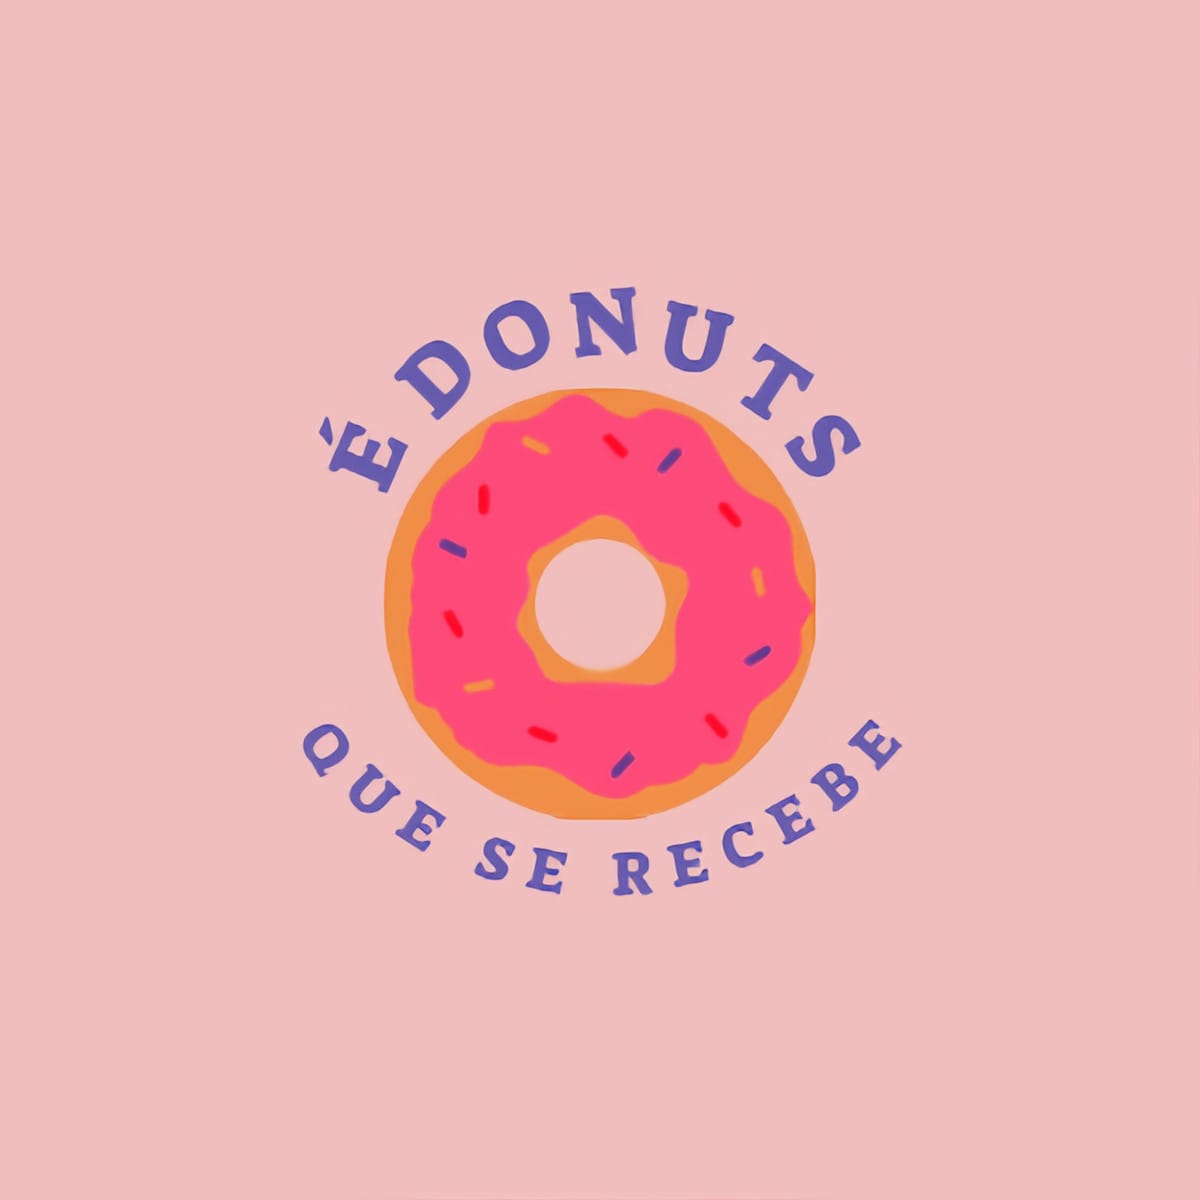 É donuts que se recebe